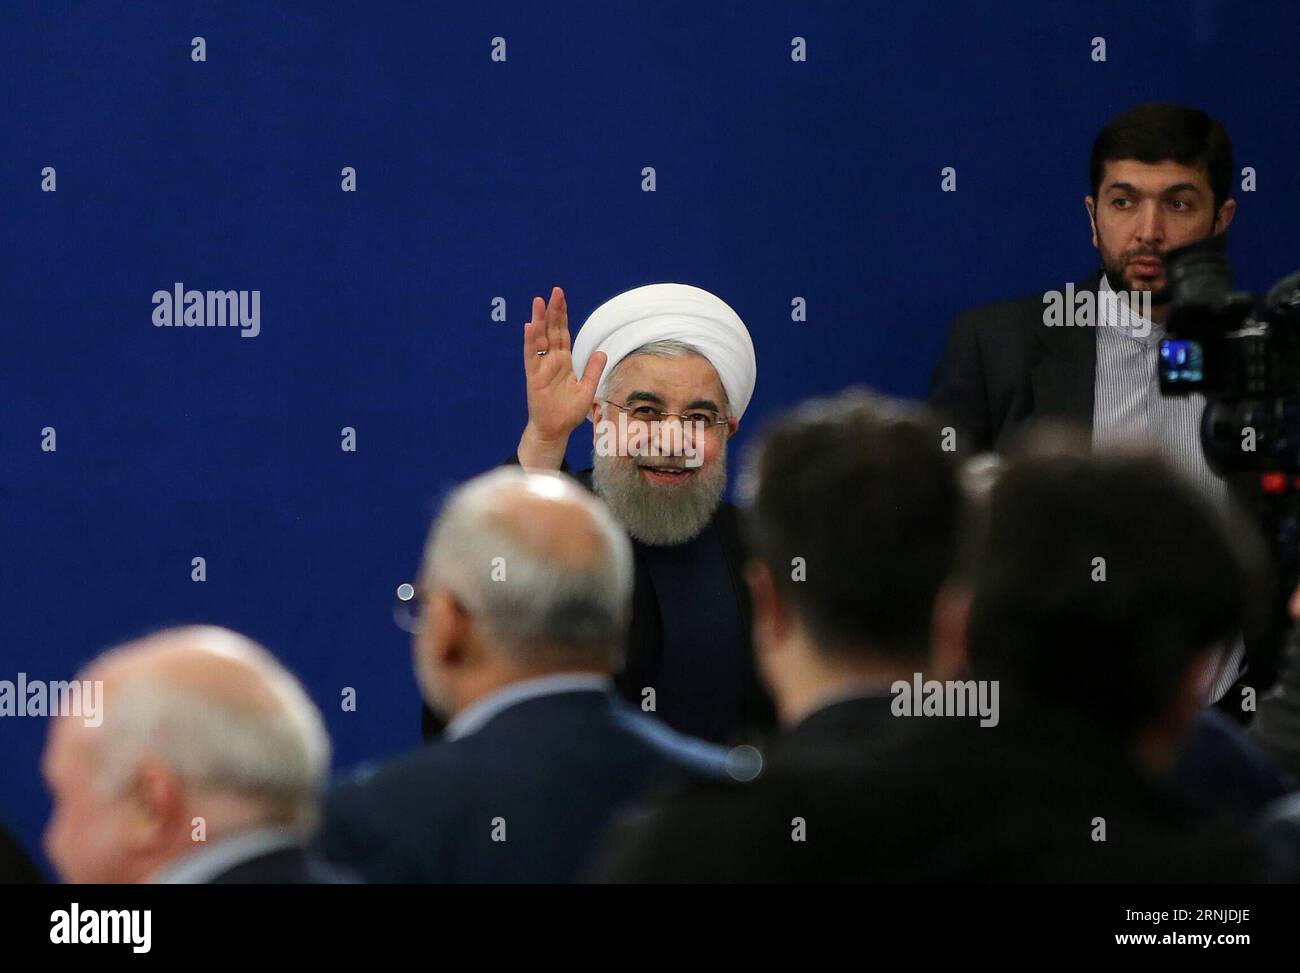 THERAN, le 17 janvier 2017 -- le président iranien Hassan Rouhani fait signe aux médias après une conférence de presse à Téhéran, en Iran, le 17 janvier 2017. Rouhani a déclaré que l’Iran n’accepterait pas une révision de son accord nucléaire international, ont rapporté mercredi les médias locaux. L accord nucléaire international, connu sous le nom de Plan d action global conjoint (JCPOA), a résolu la question nucléaire controversée de Téhéran qui dure depuis une décennie. (gl) IRAN-TÉHÉRAN-HASSAN ROUHANI-NEWS CONFERENCE AhmadxHalabisaz PUBLICATIONxNOTxINxCHN THERAN Jan 17 2017 le président iranien Hassan Rouhani fait signe aux médias après une conférence de presse à TÉHÉRAN en Iran Banque D'Images